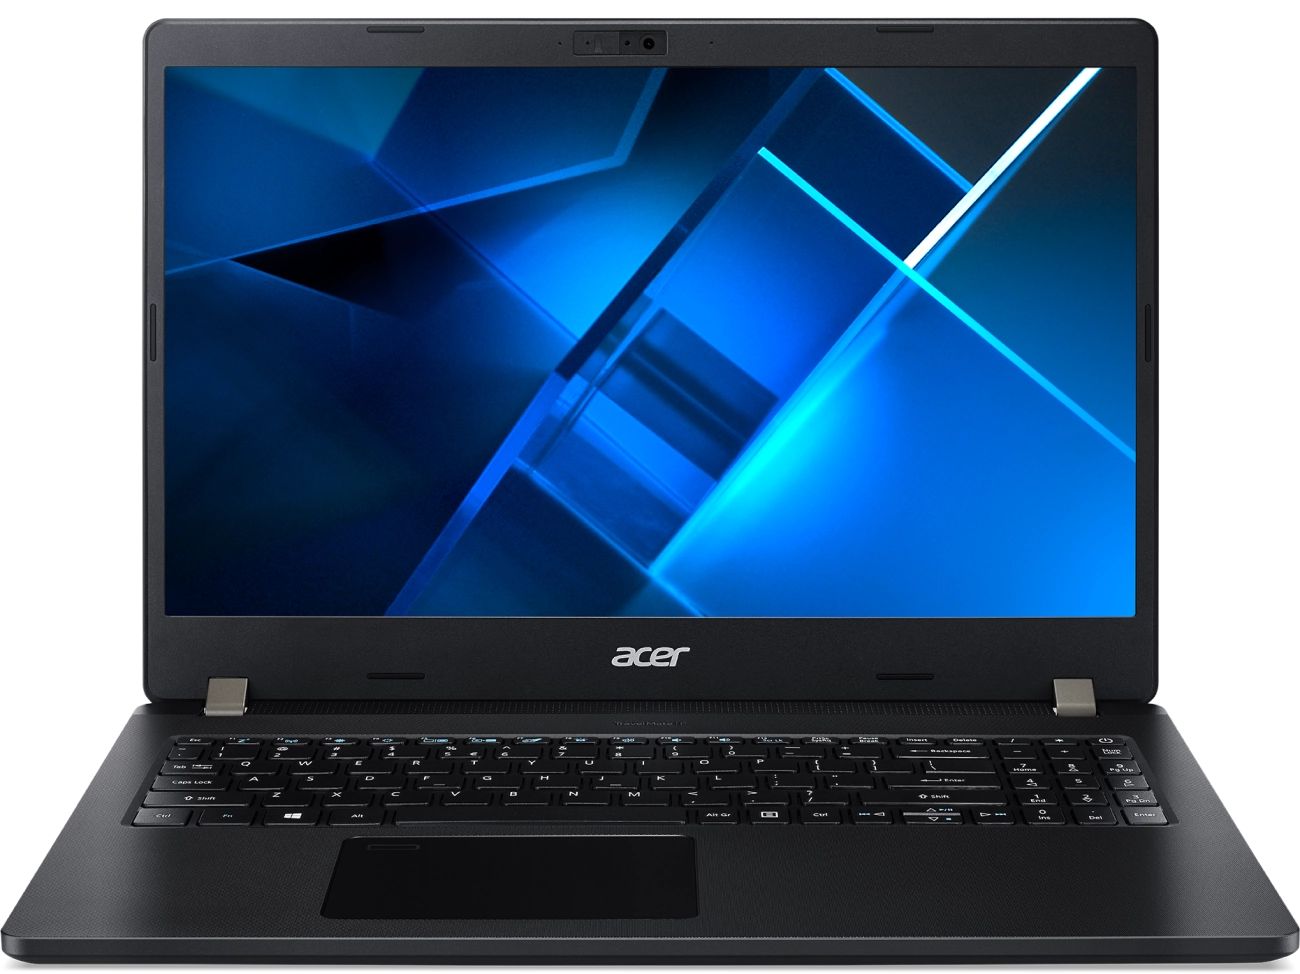 Ноутбук Acer TravelMate P2 TMP215-53 black (NX.VQAER.002) ноутбук acer travelmate p2 tmp215 53 564x nx vpver 009 15 6